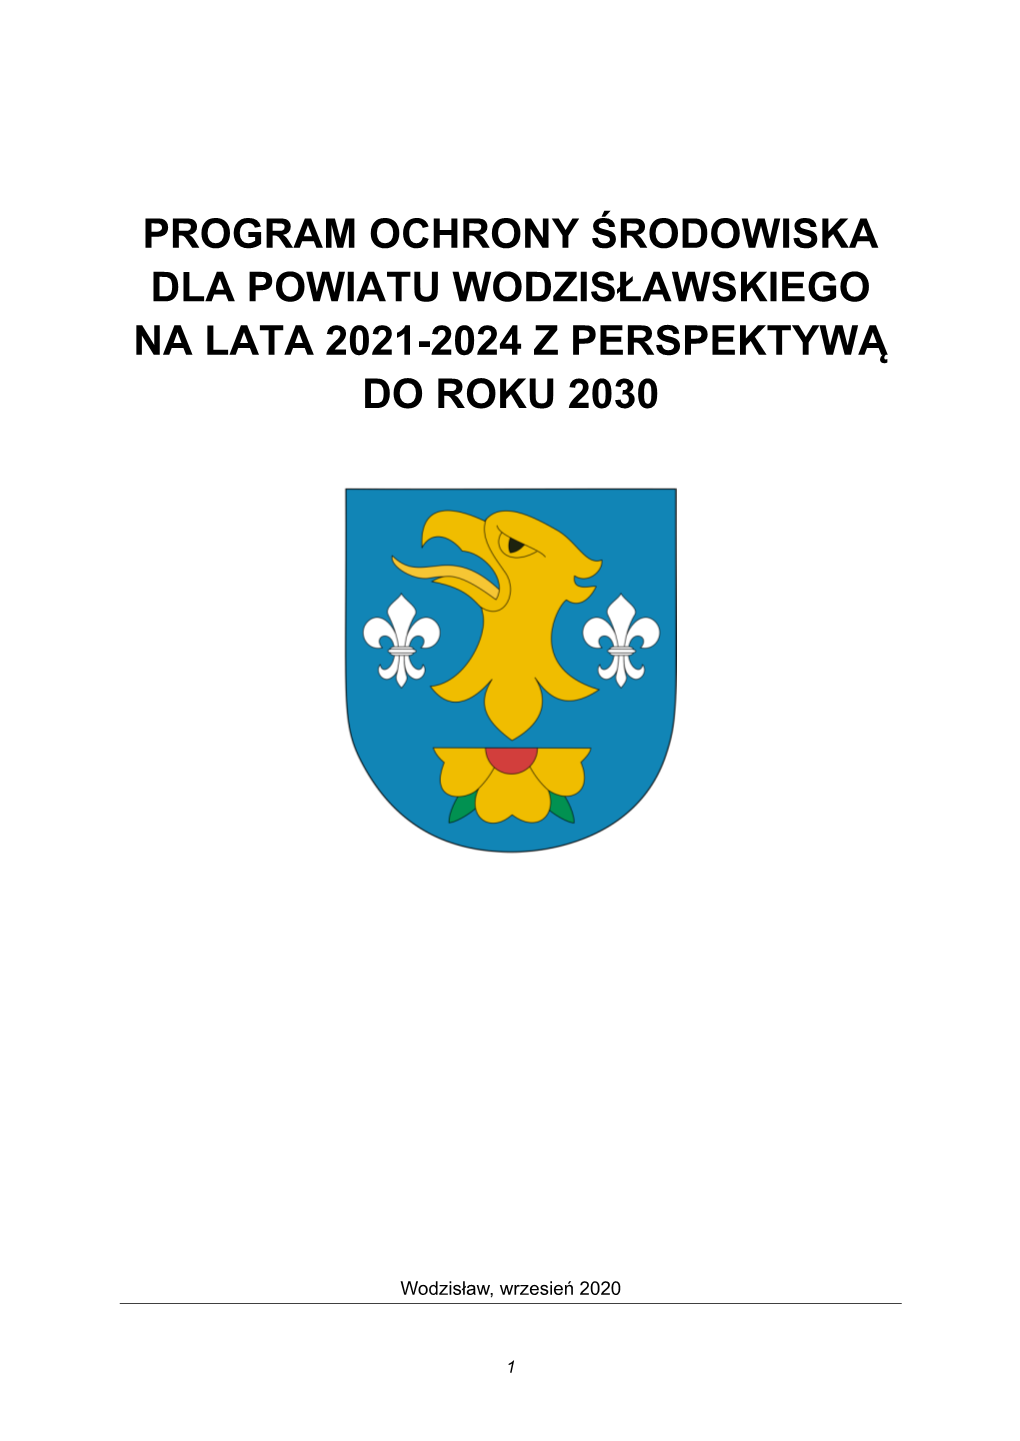 Program Ochrony Środowiska Dla Powiatu Wodzisławskiego Na Lata 2021-2024 Z Perspektywą Do Roku 2030